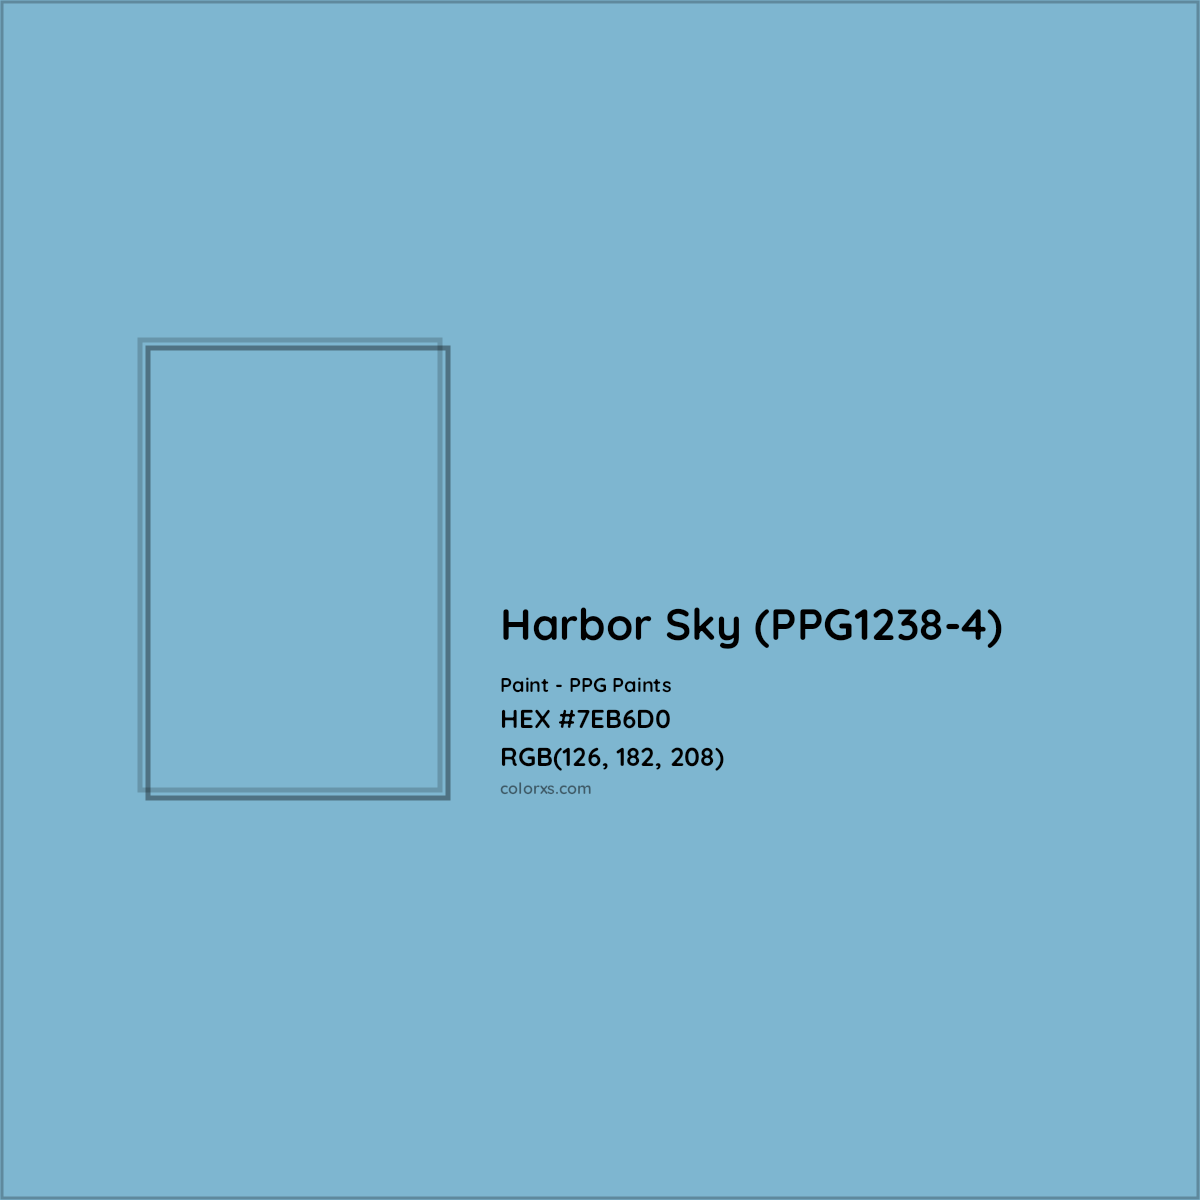 HEX #7EB6D0 Harbor Sky (PPG1238-4) Paint PPG Paints - Color Code